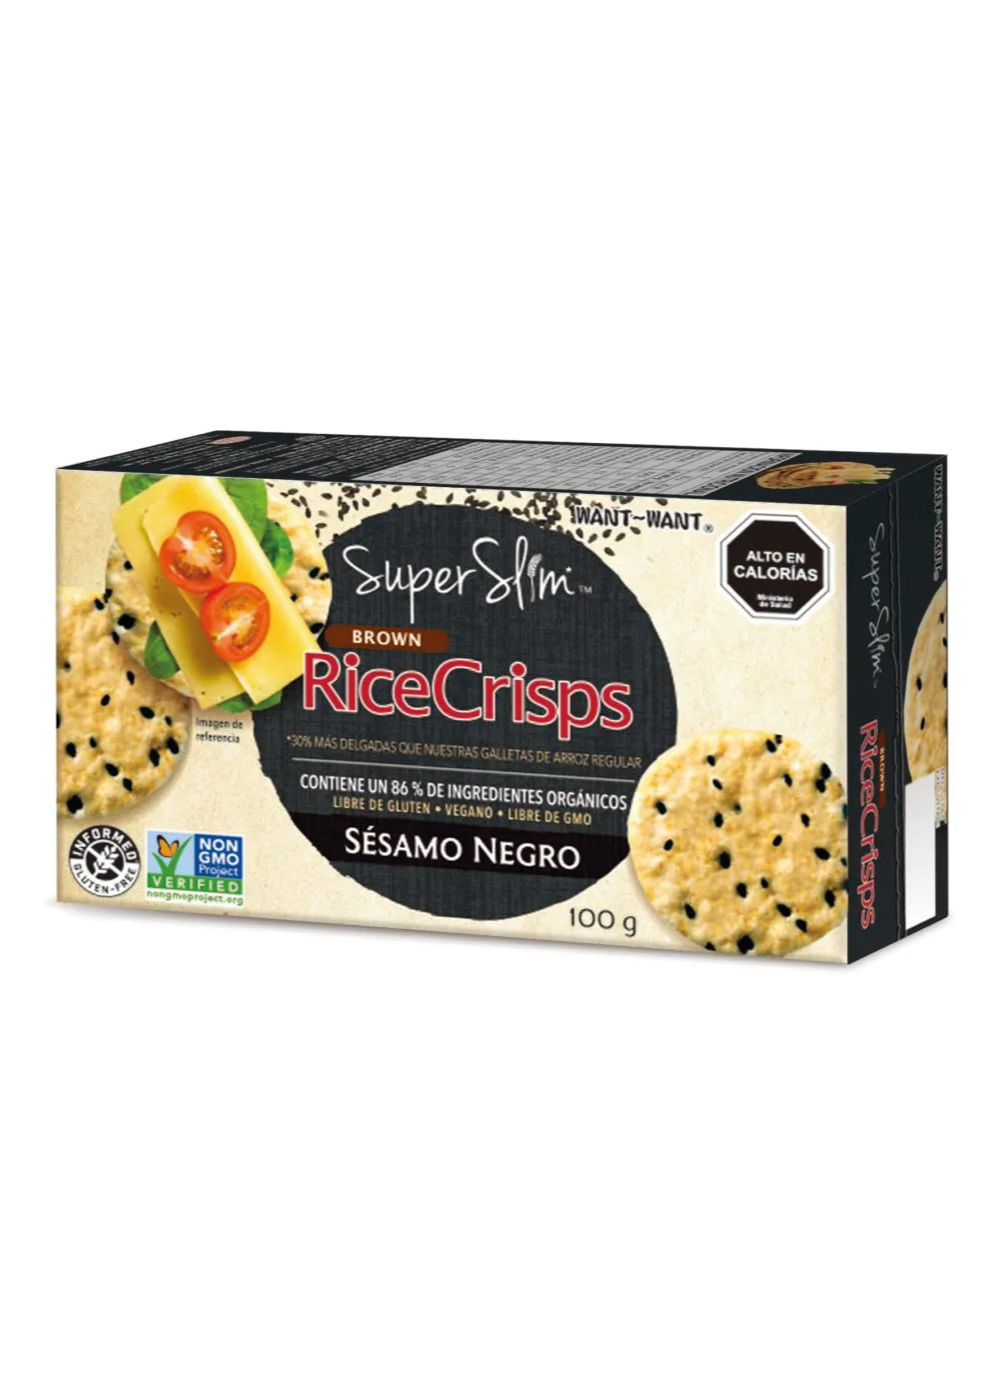 Galletas de Arroz Rice Crisps Super Slim Sésamo Negro Want-Want 100gr